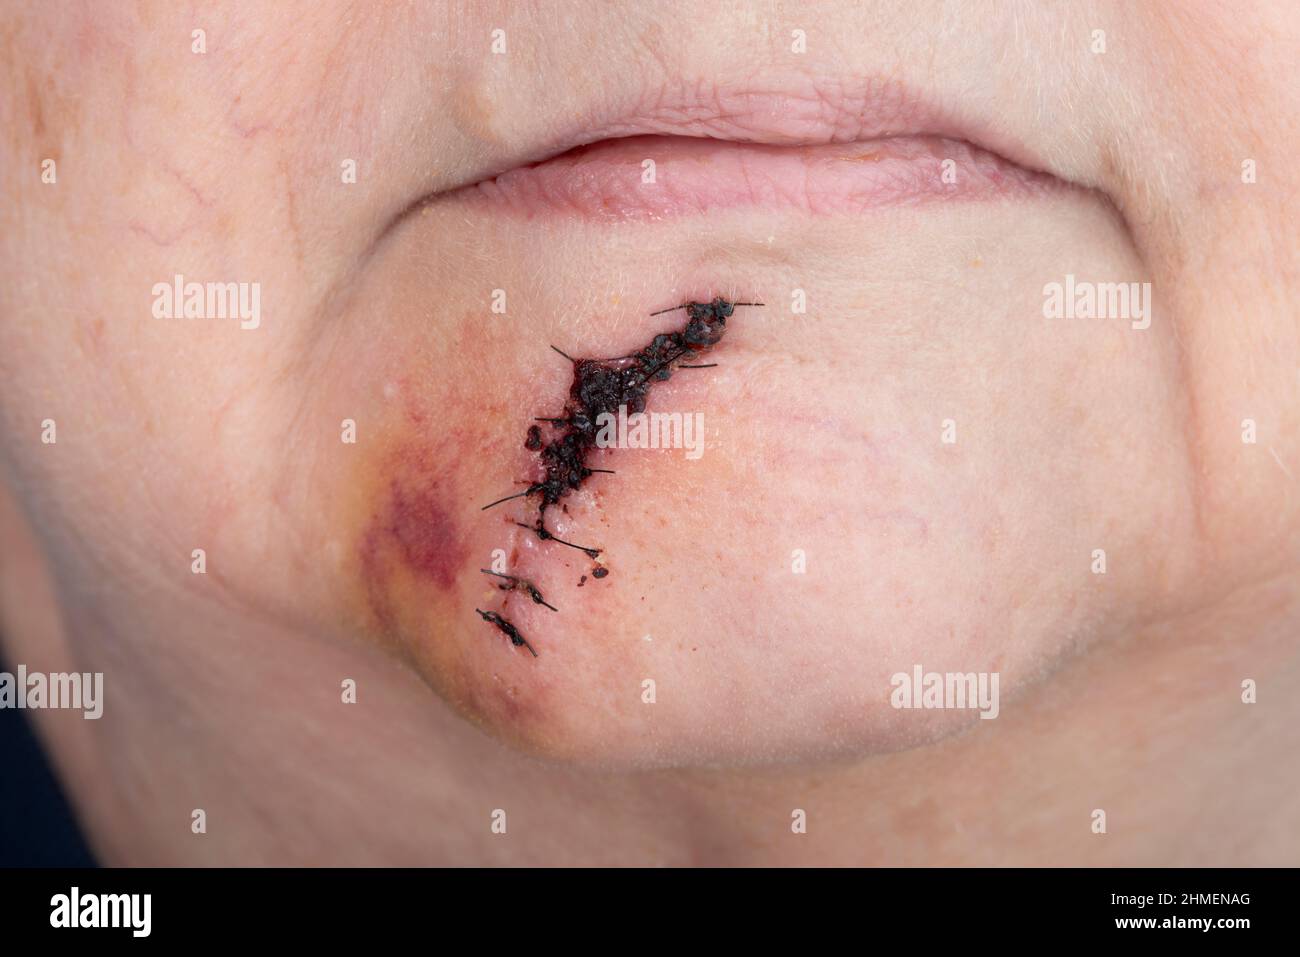 Horizontale Aufnahme einer postoperativen Naht zwischen ihrer Unterlippe und ihrem Kinn nach einer Hautkrebsoperation. Stockfoto